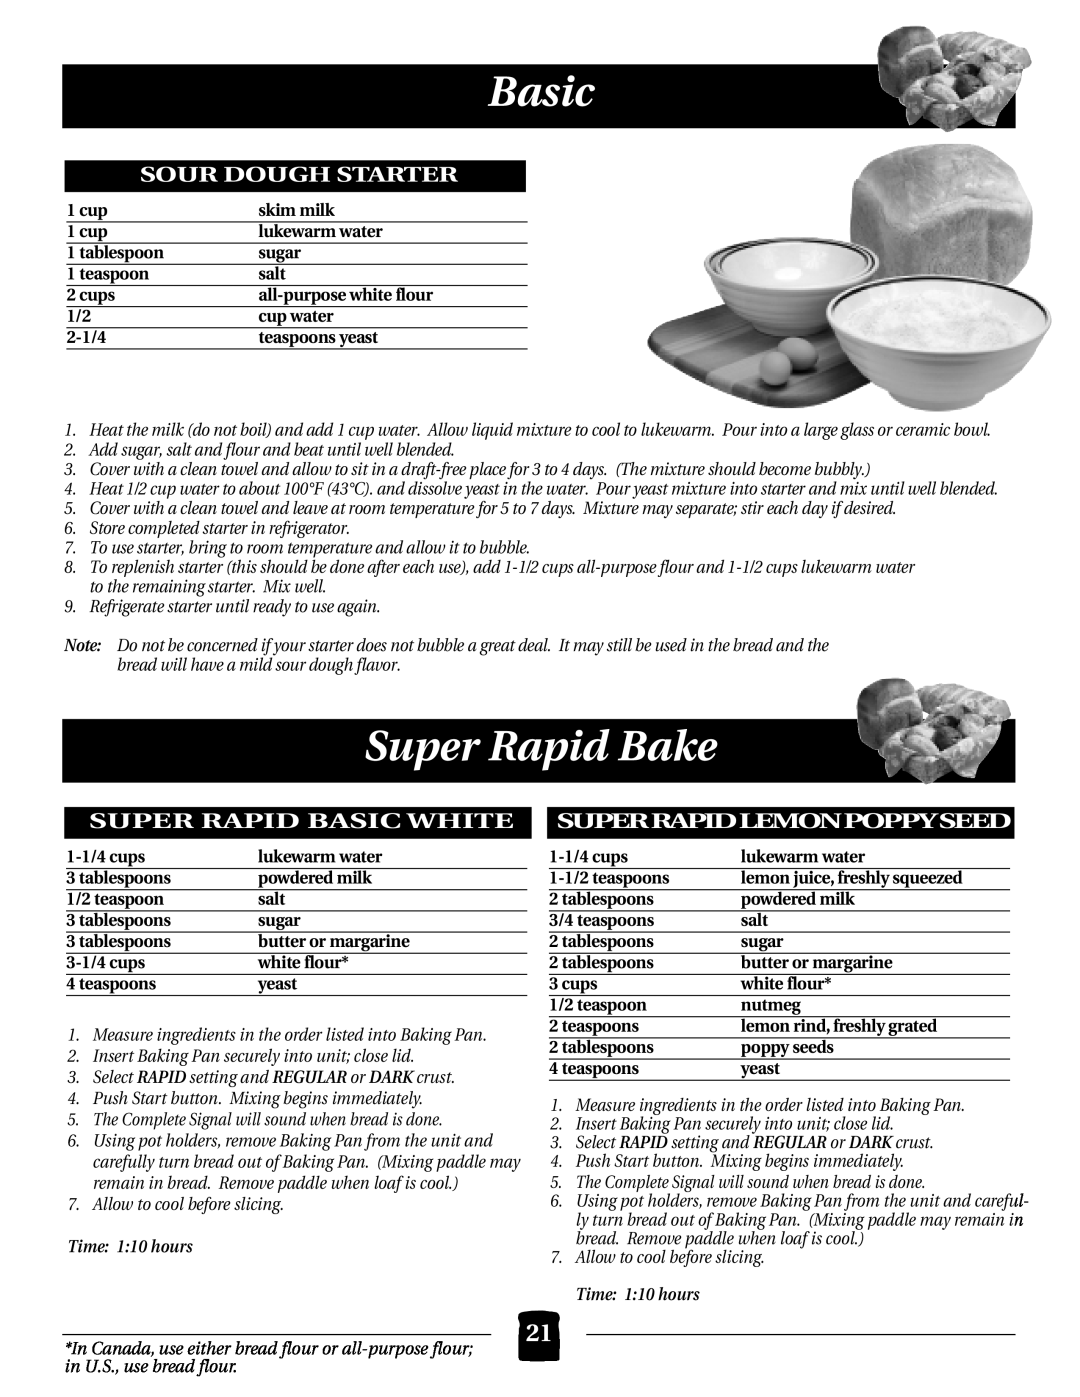 Black & Decker B2000 Super Rapid Bake, Sour Dough Starter, Super Rapid Basic White Superrapidlemonpoppyseed 